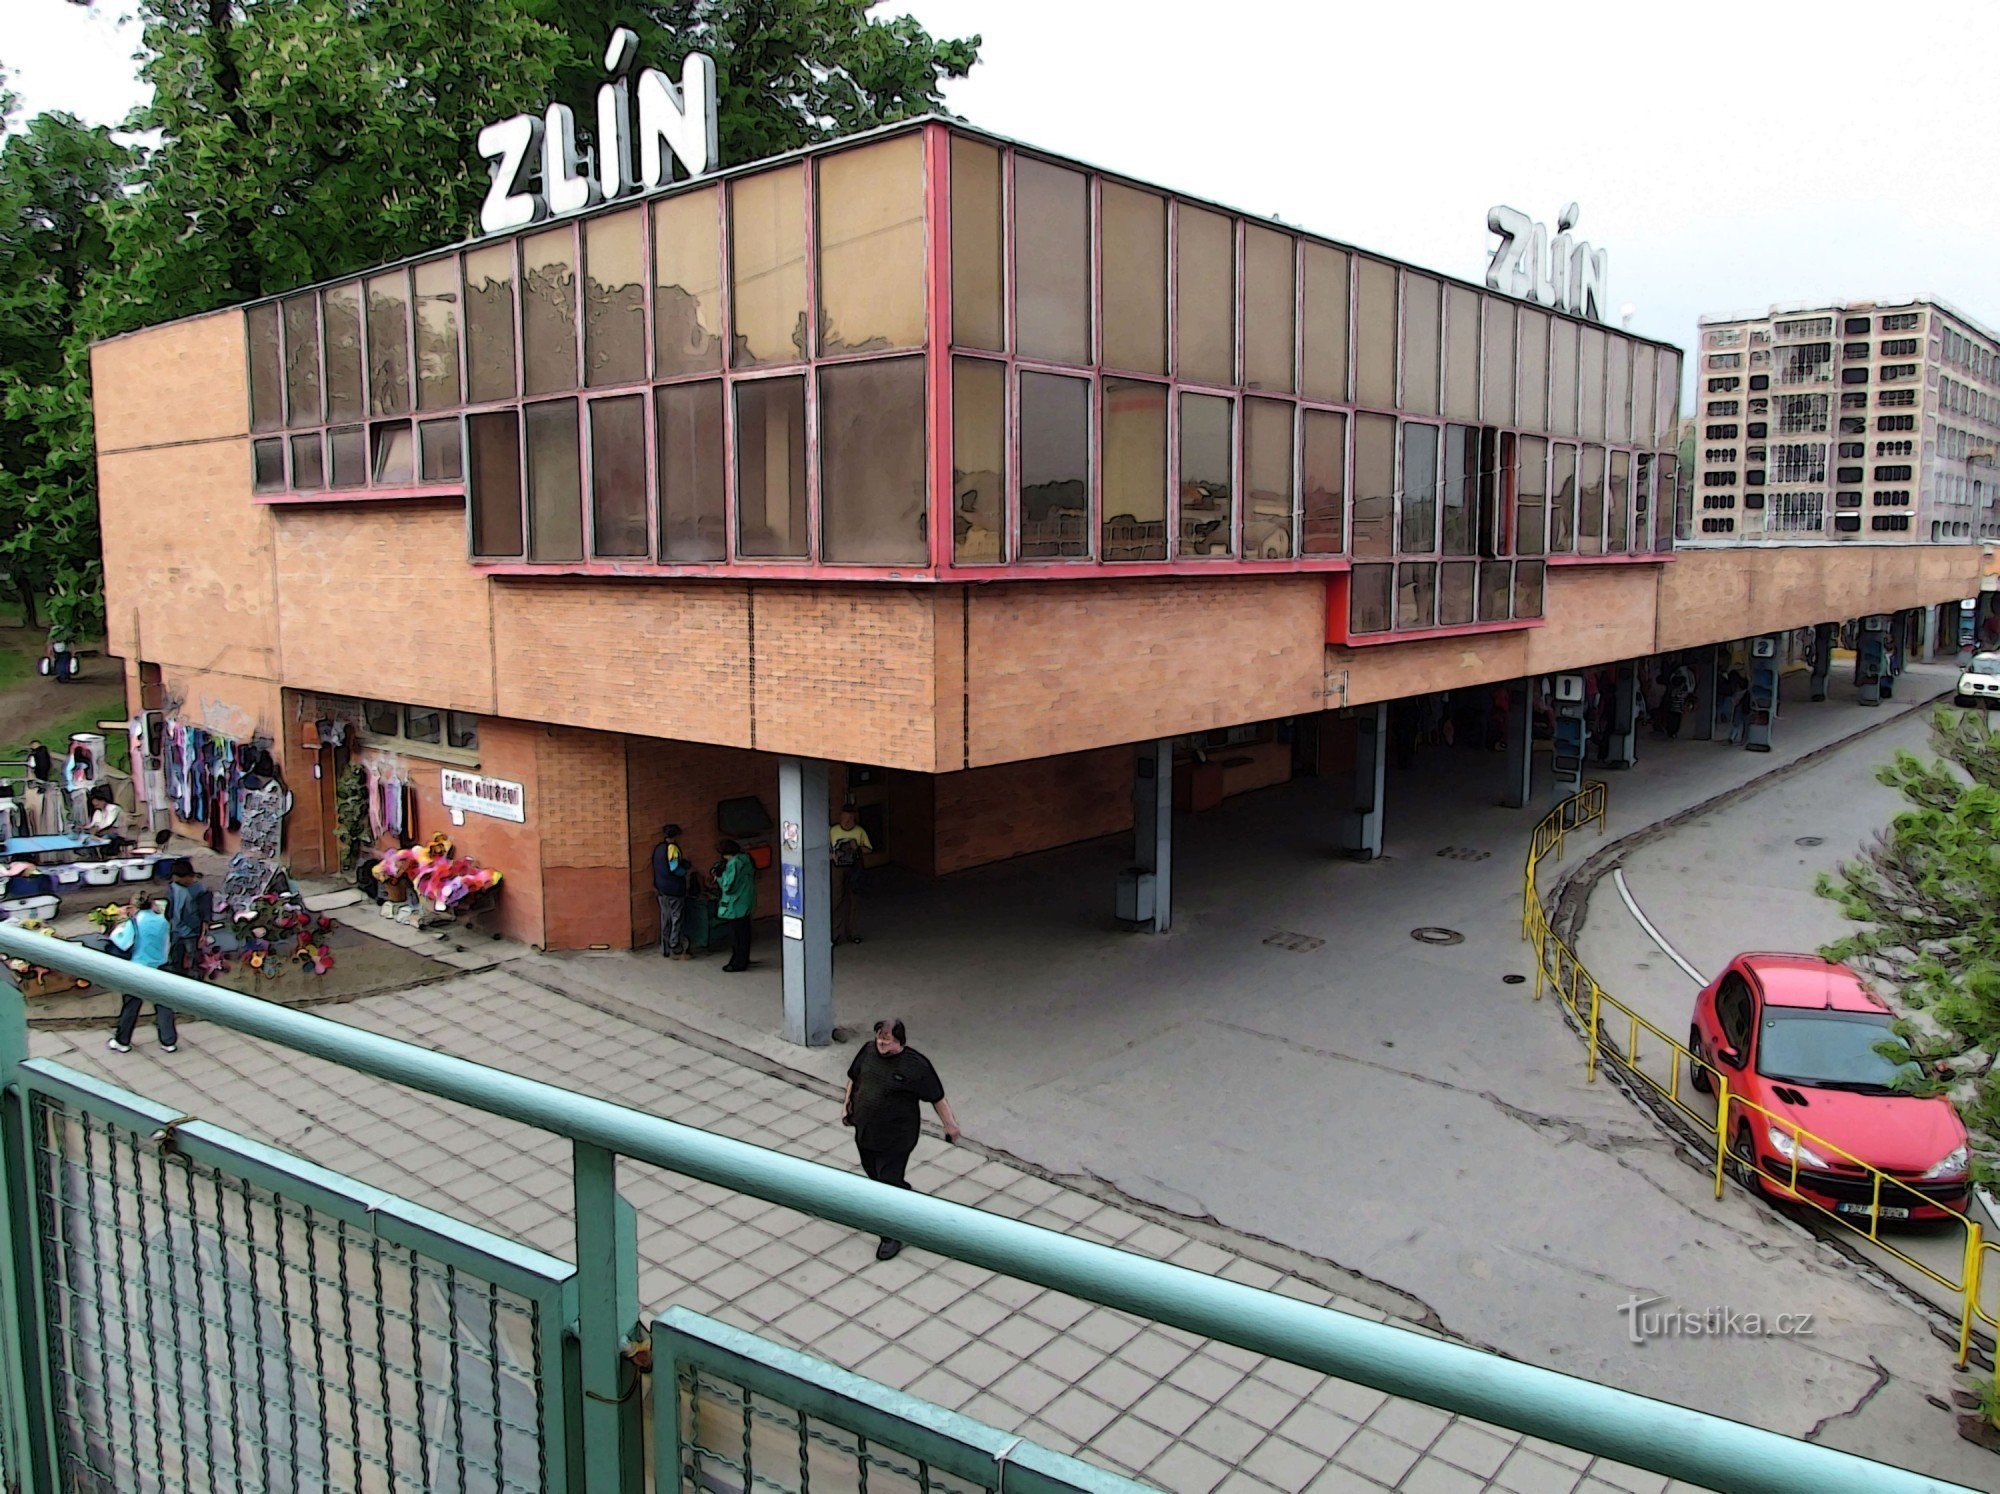 Zlín busstation